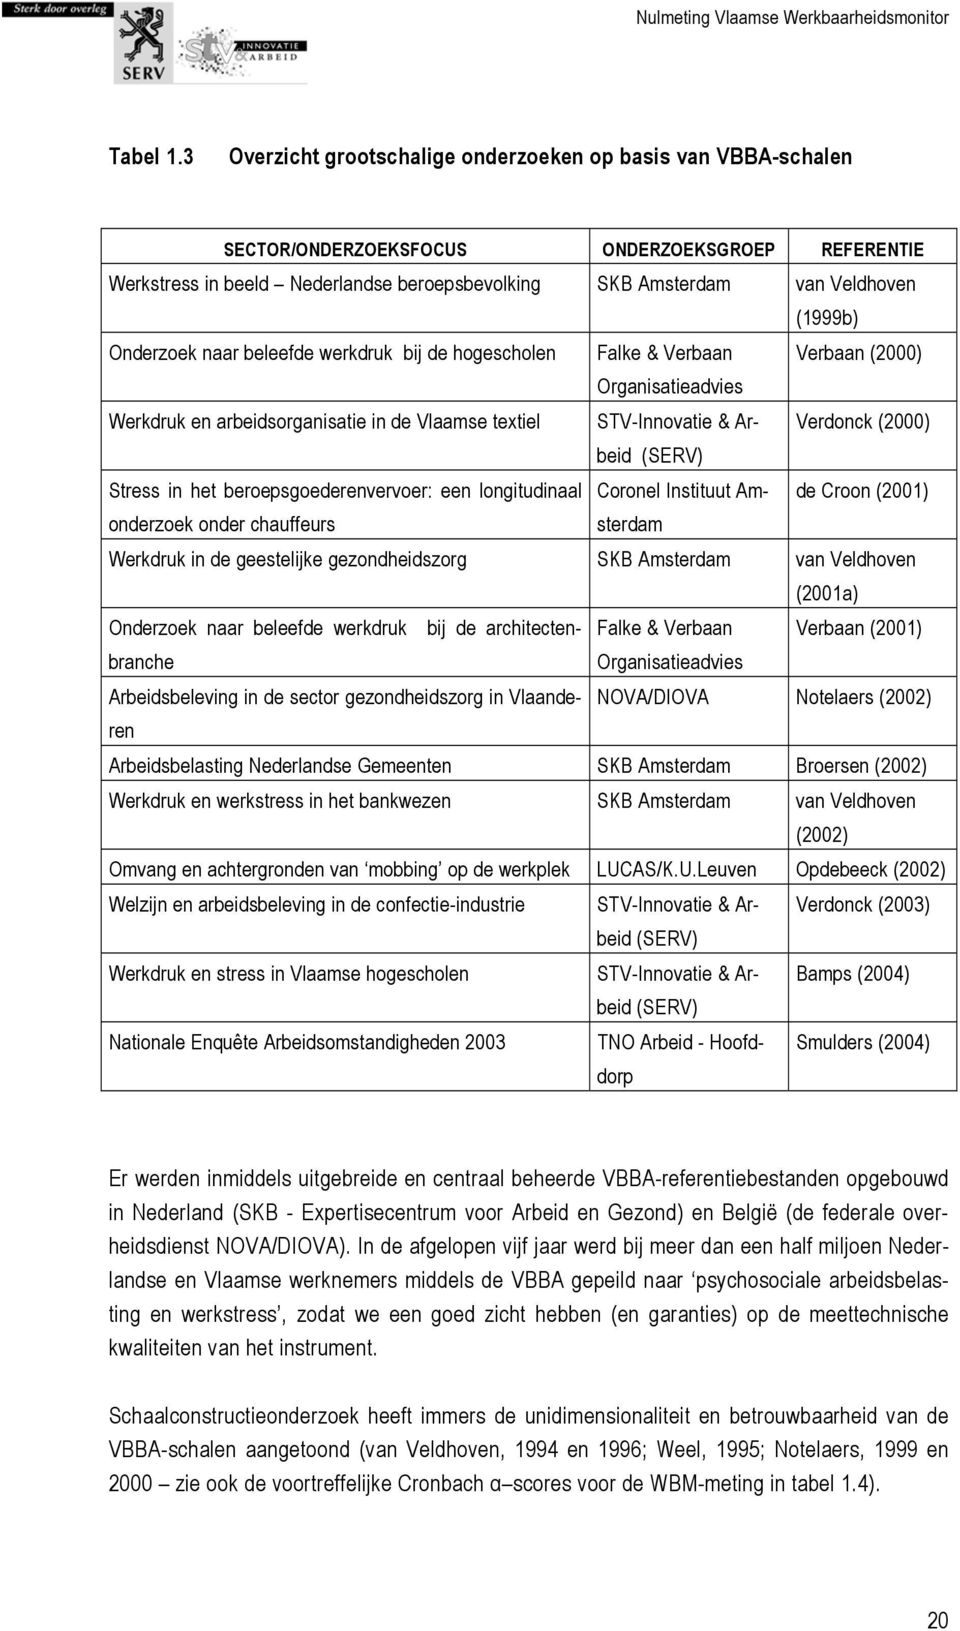 Onderzoek naar beleefde werkdruk bij de hogescholen Falke & Verbaan Verbaan (2000) Organisatieadvies Werkdruk en arbeidsorganisatie in de Vlaamse textiel STV-Innovatie & Arbeid Verdonck (2000) (SERV)